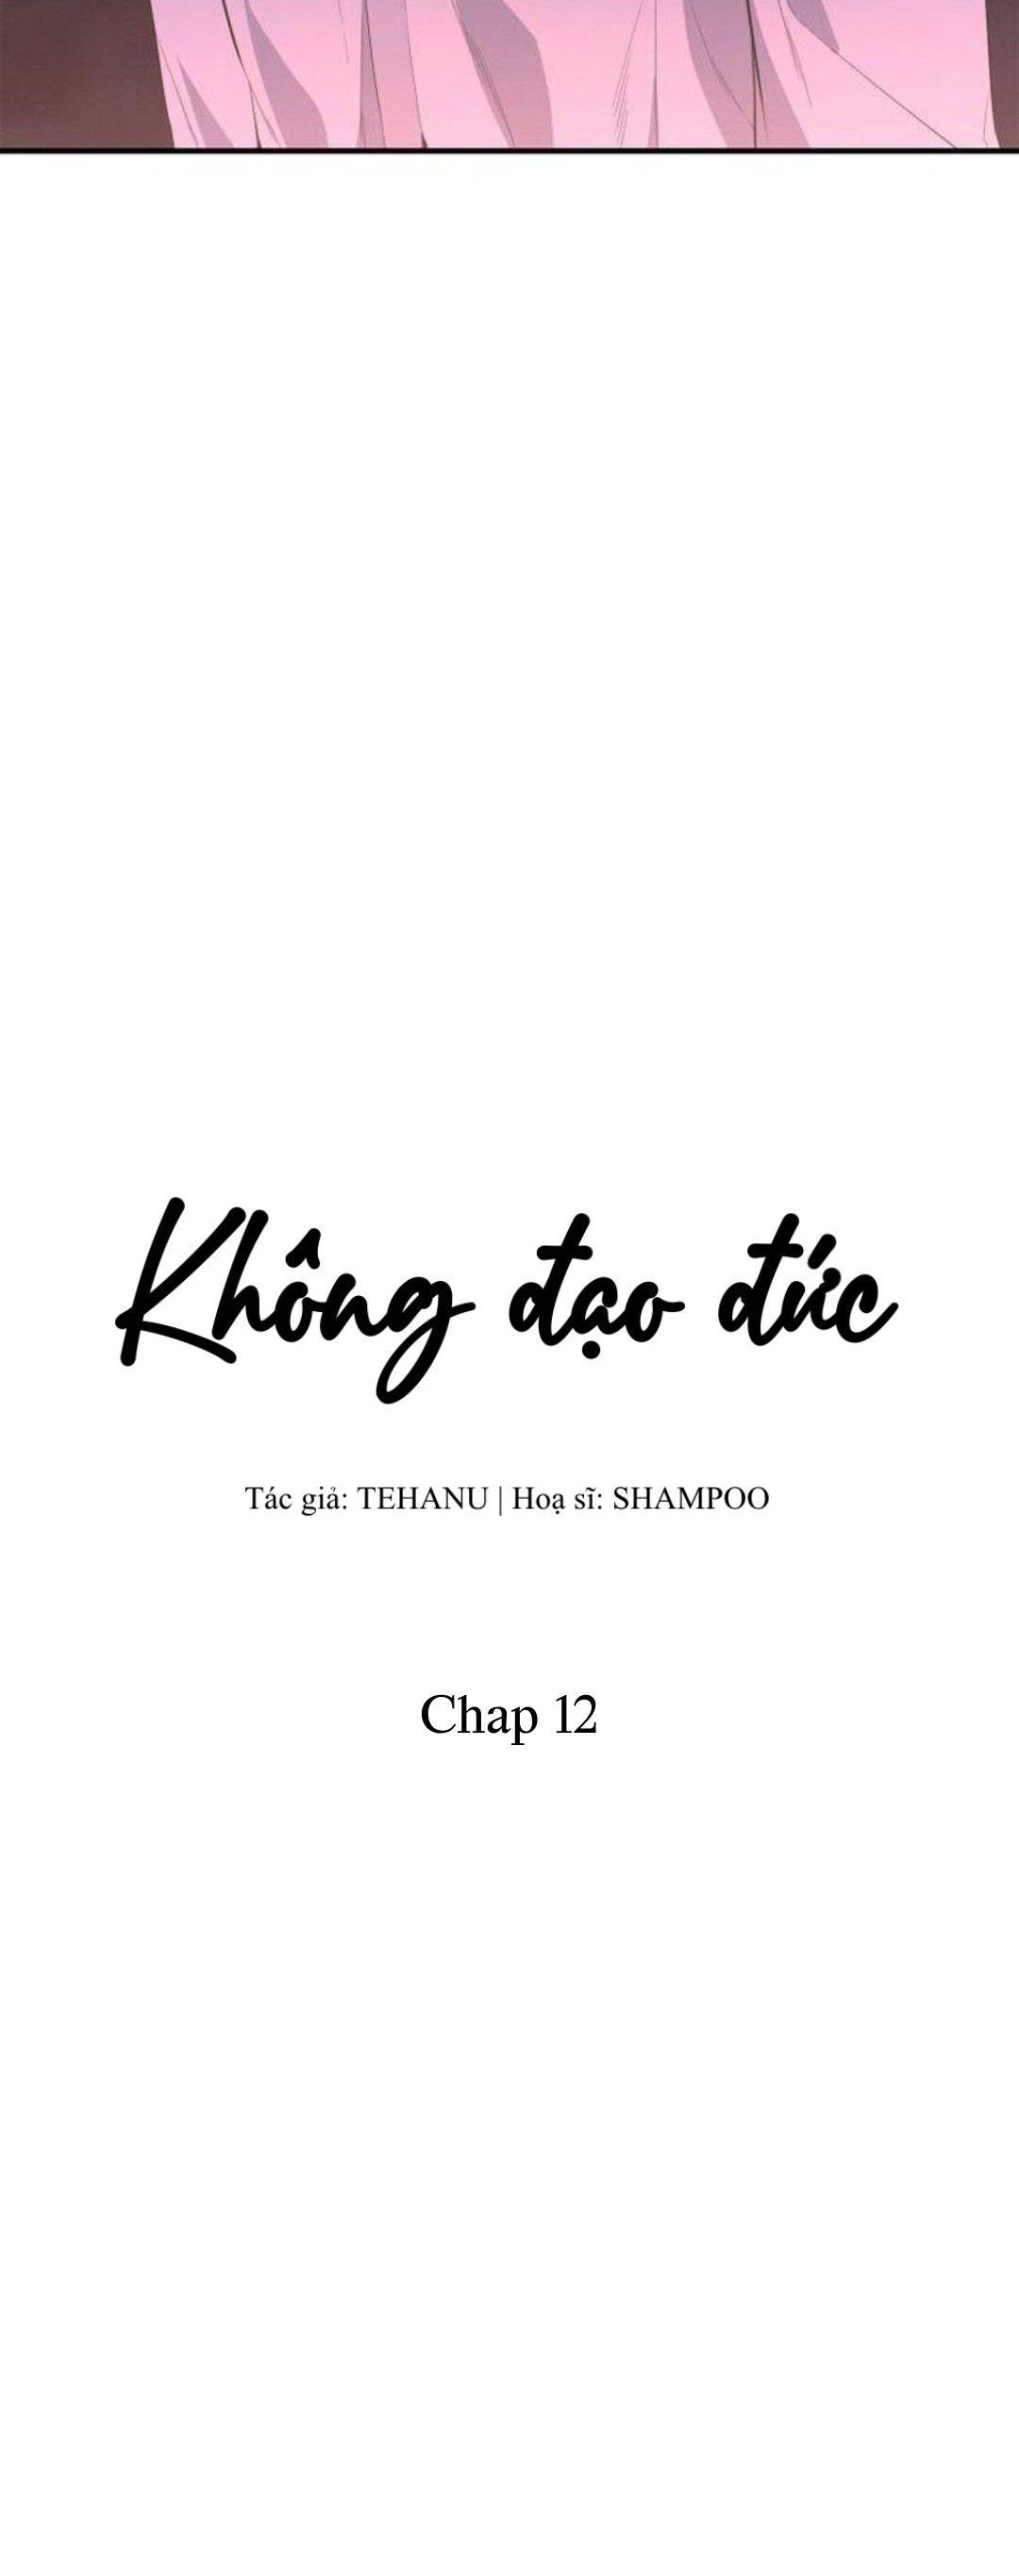 khong-dao-duc-chap-12-16